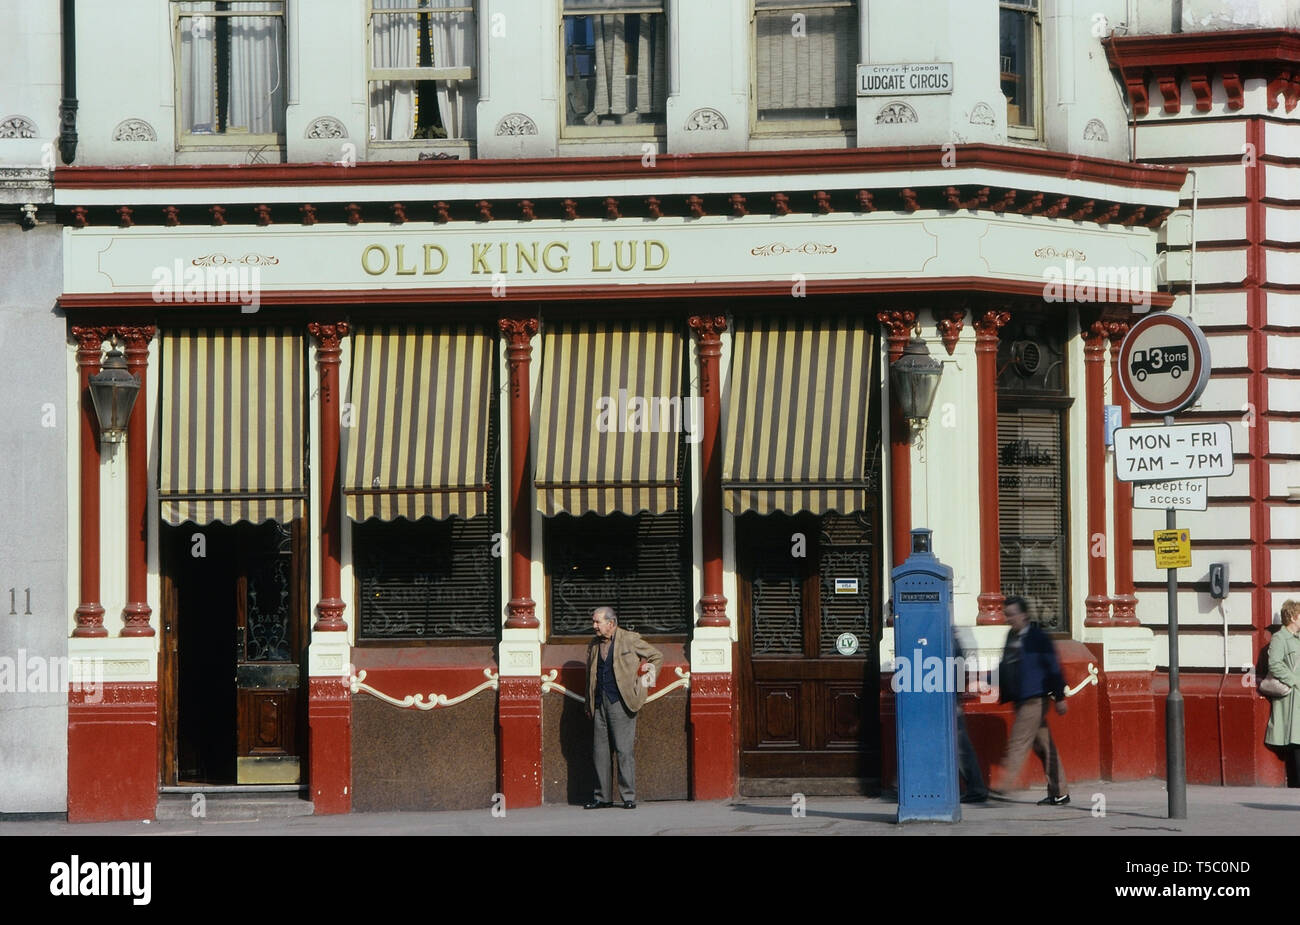 Le vieux roi Lud, Ludgate Circus pub, Londres, Angleterre, Royaume-Uni. Circa 1980 Banque D'Images